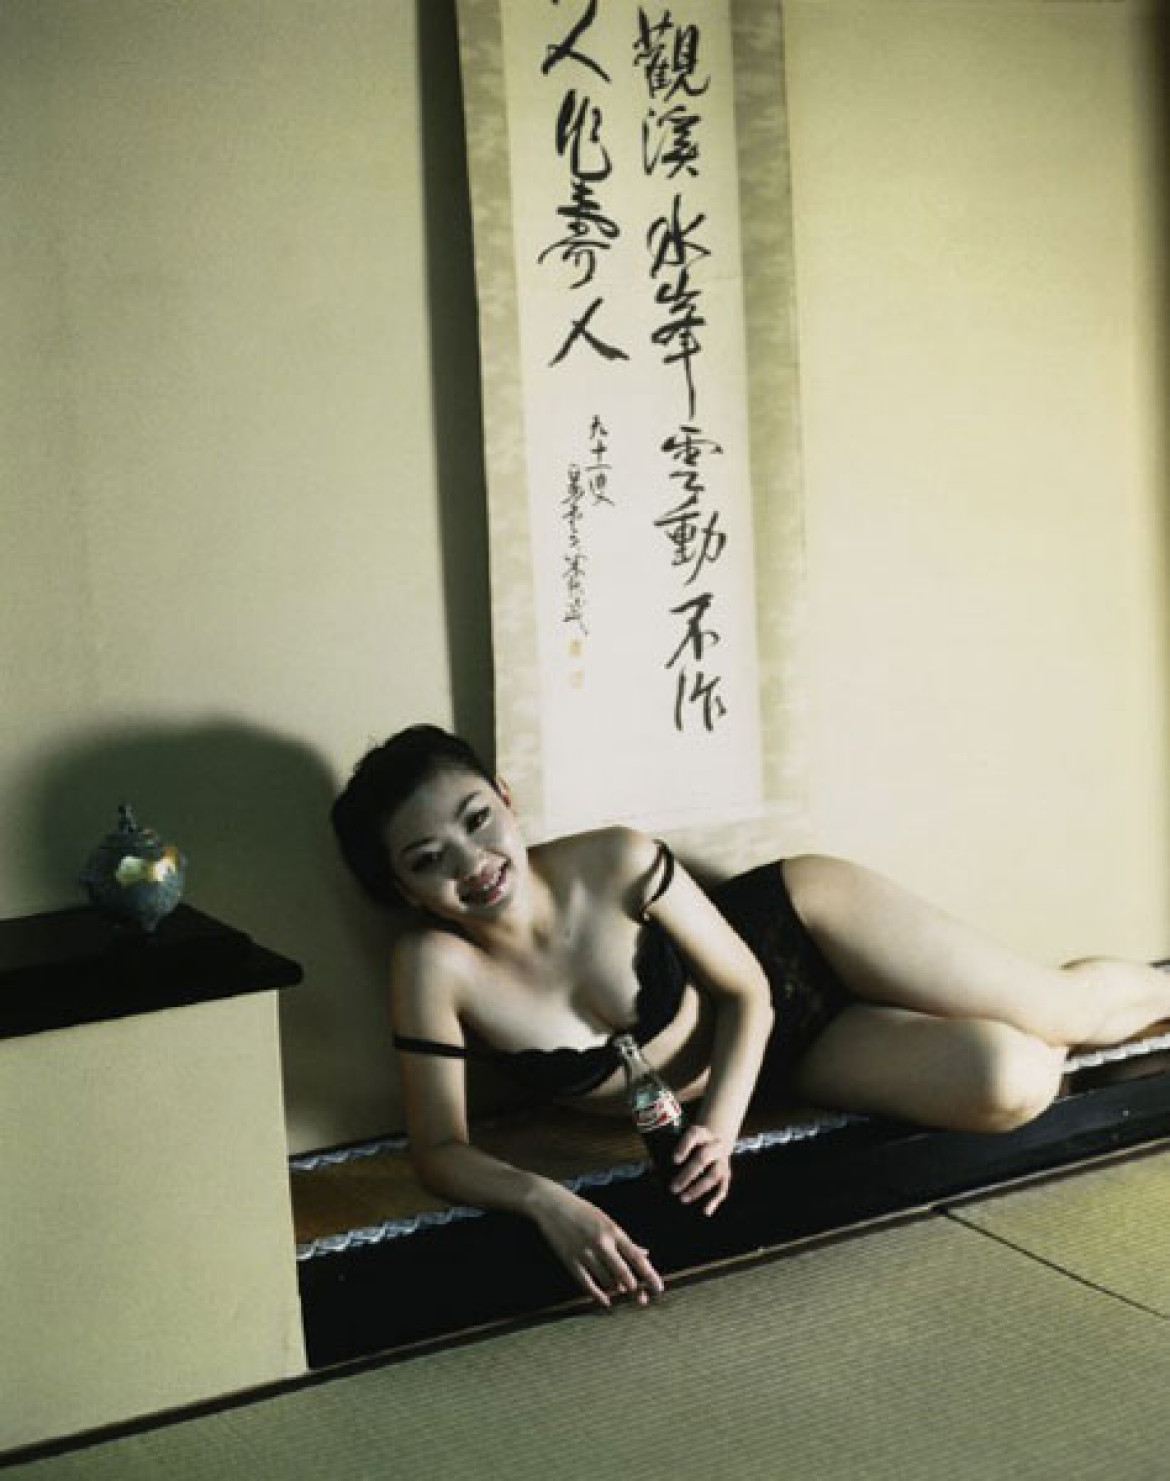 fot. Nabuyoshi Araki, Girl with coca-cola bottle, 1940, z wystawy "Klasycy fotografii w kolekcji Galerii Piekary"